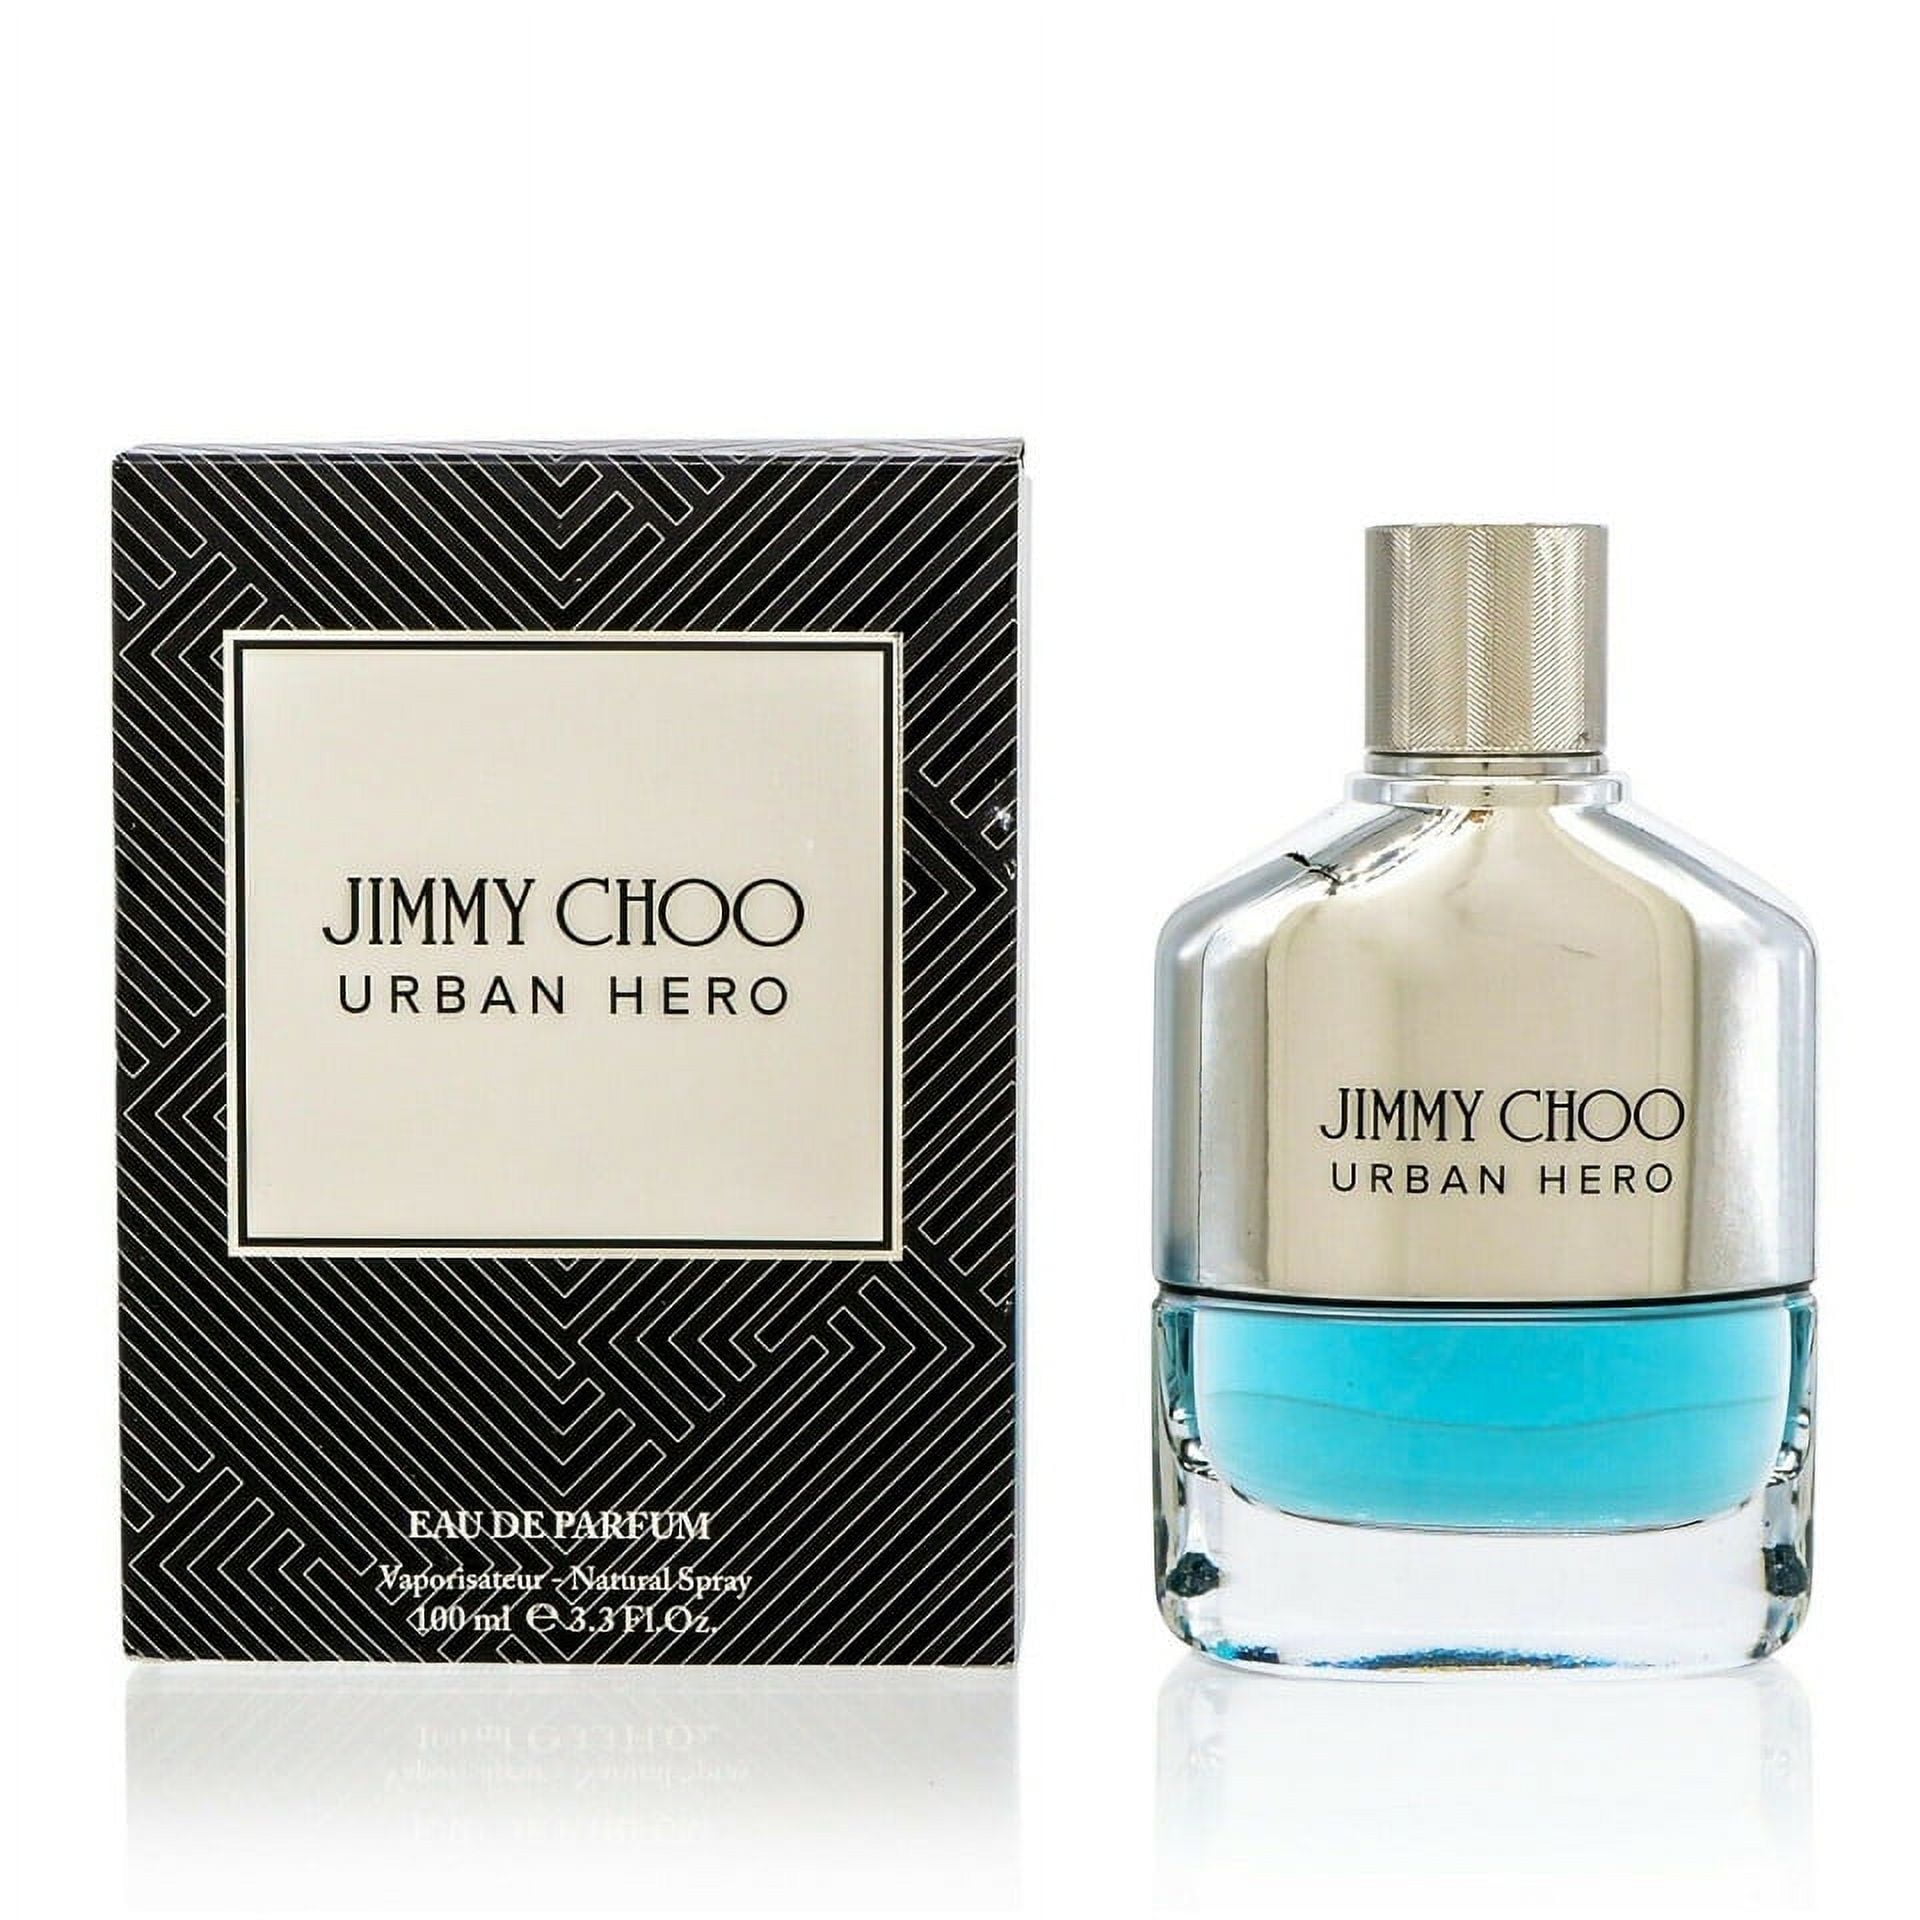 Jimmy Choo Urban Hero Perfume Price on Sale | website.jkuat.ac.ke